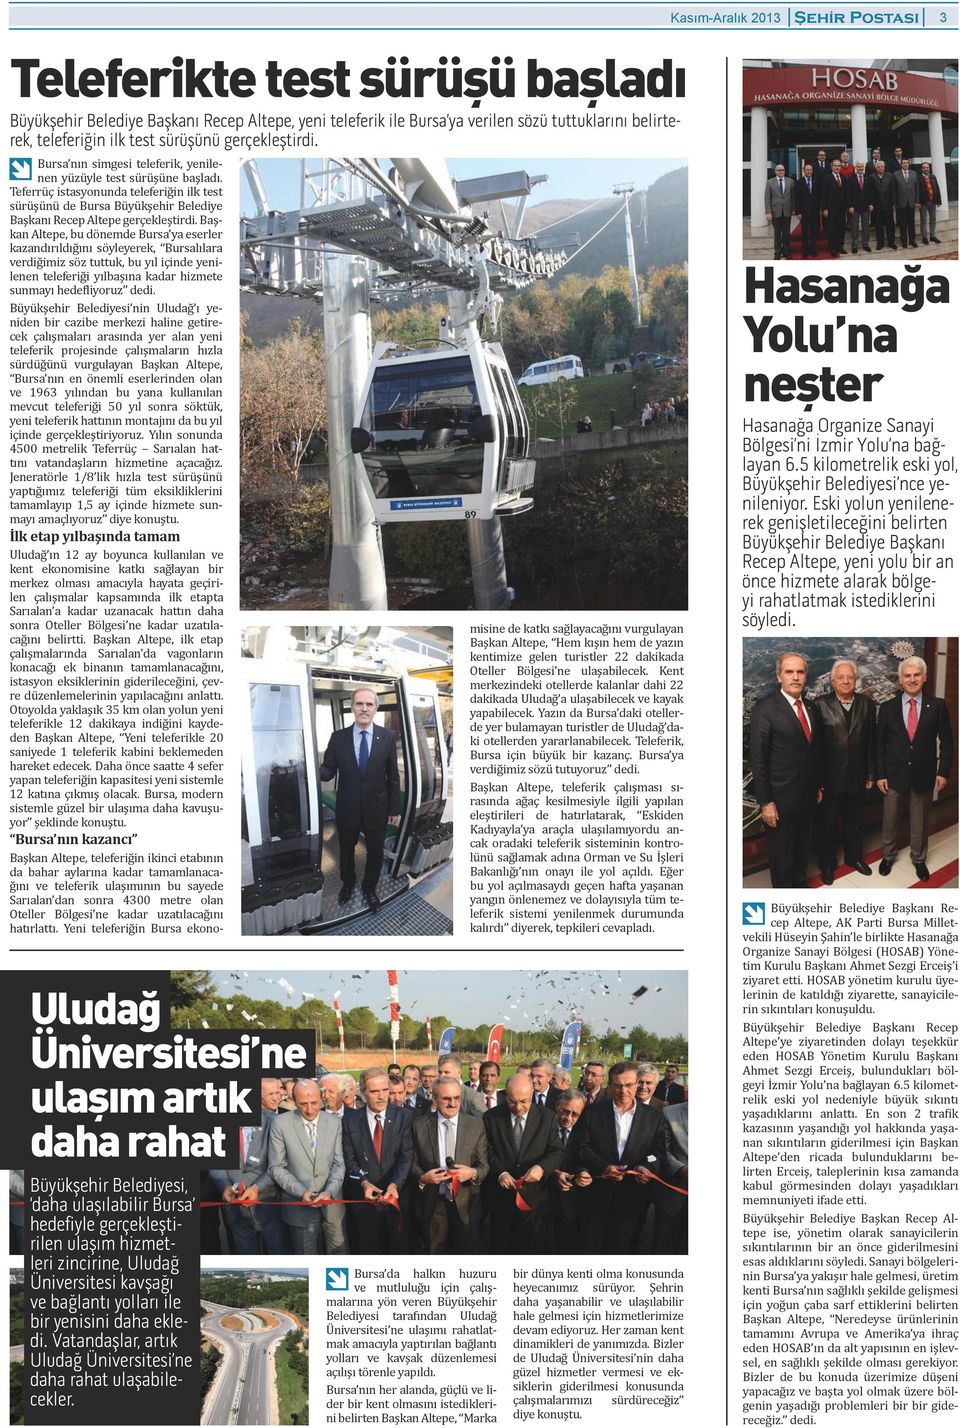 yenisini daha ekledi Vatandaşlar, artık Uludağ Üniversitesi ne daha rahat ulaşabilecekler Bursa da halkın huzuru ve mutluluğu iin alışmalarına yön veren Büyükşehir Belediyesi tarafından Uludağ